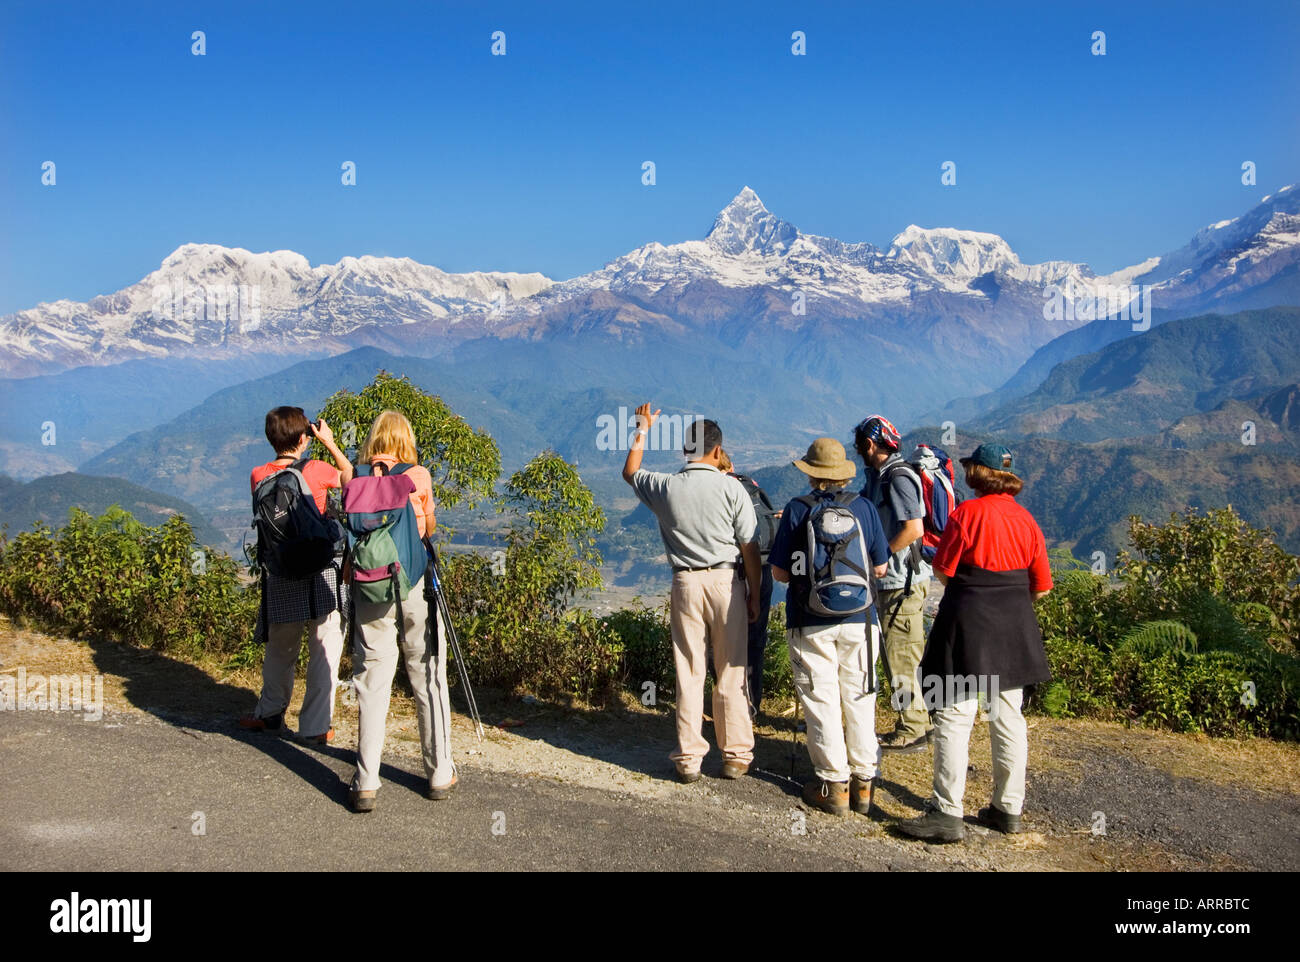 Les touristes étant enseignées sur trekking paysage nature par guide népalais Pokhara Népal Himalaya Machhapuchare outlook sarangkot Banque D'Images